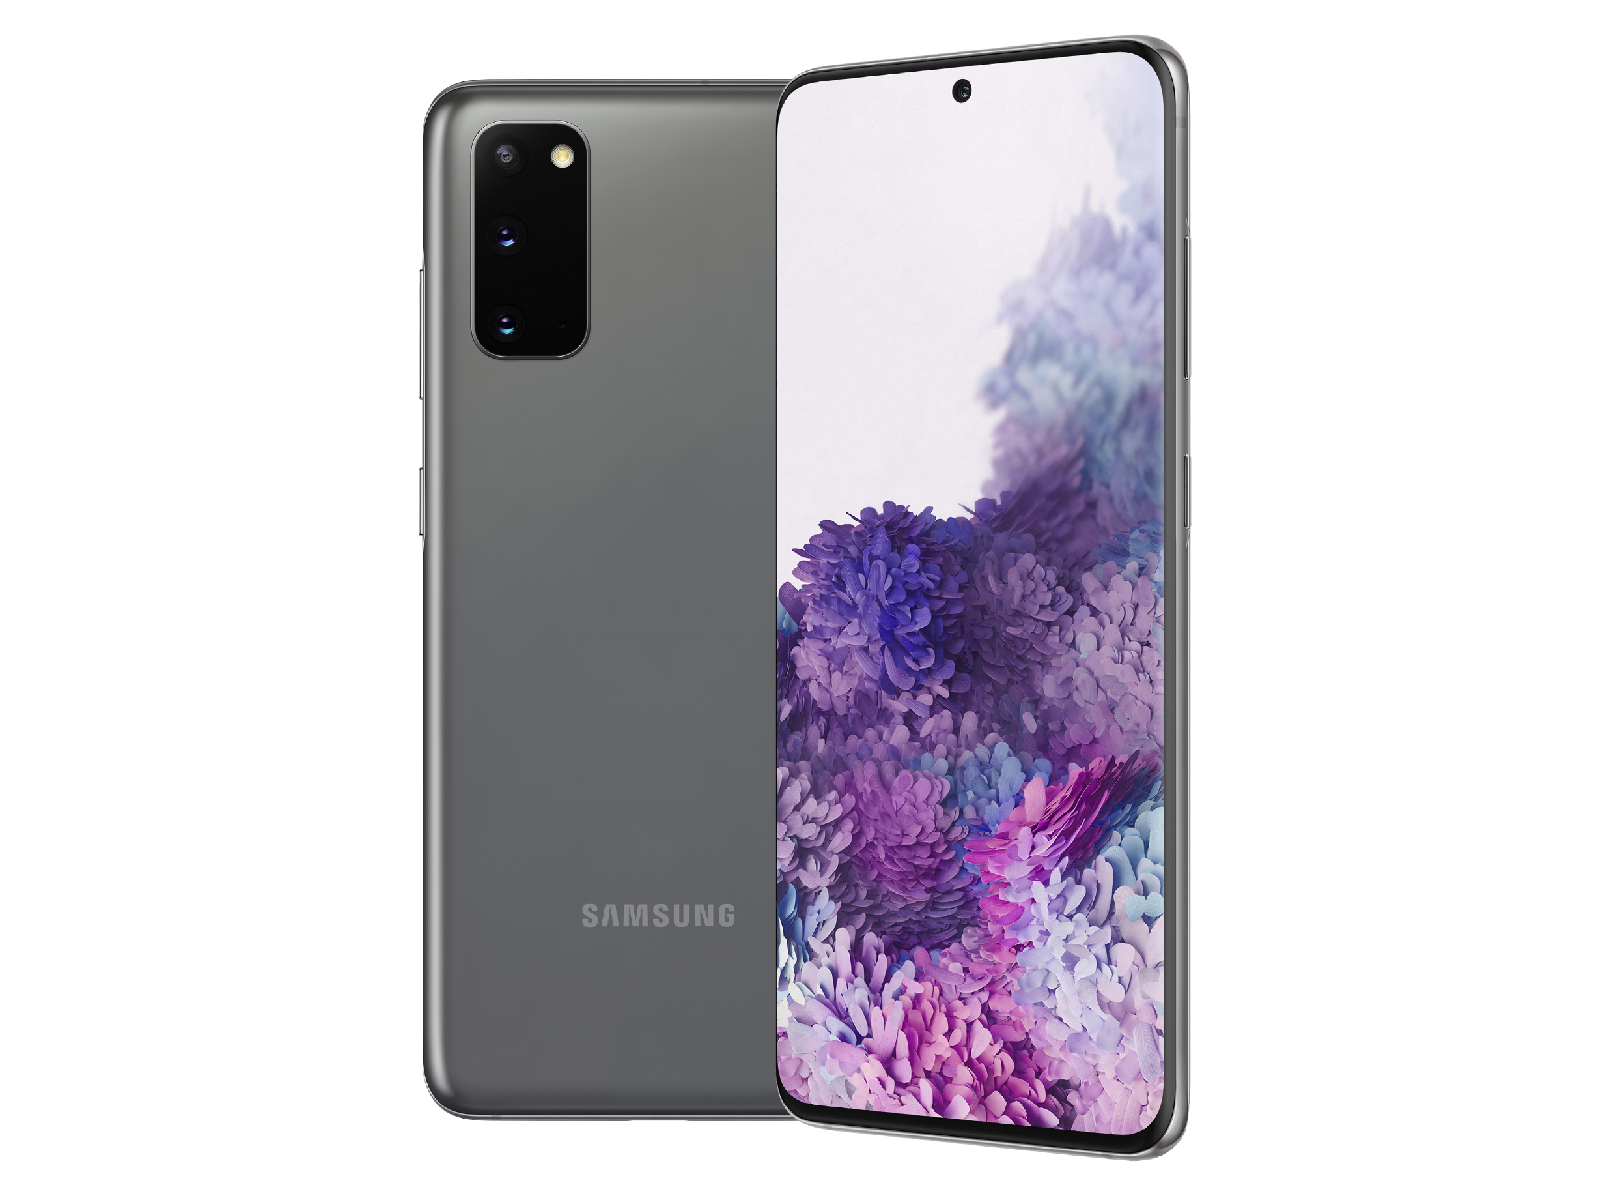 Samsung Galaxy S20 là một trong những điện thoại thông minh đáng chú ý nhất của Samsung với những tính năng vượt trội và thiết kế đẹp mắt. Khám phá những ảnh hình nền độc đáo và đẹp mắt cho Samsung Galaxy S20 để tạo tổng thể hoàn hảo và độc đáo.